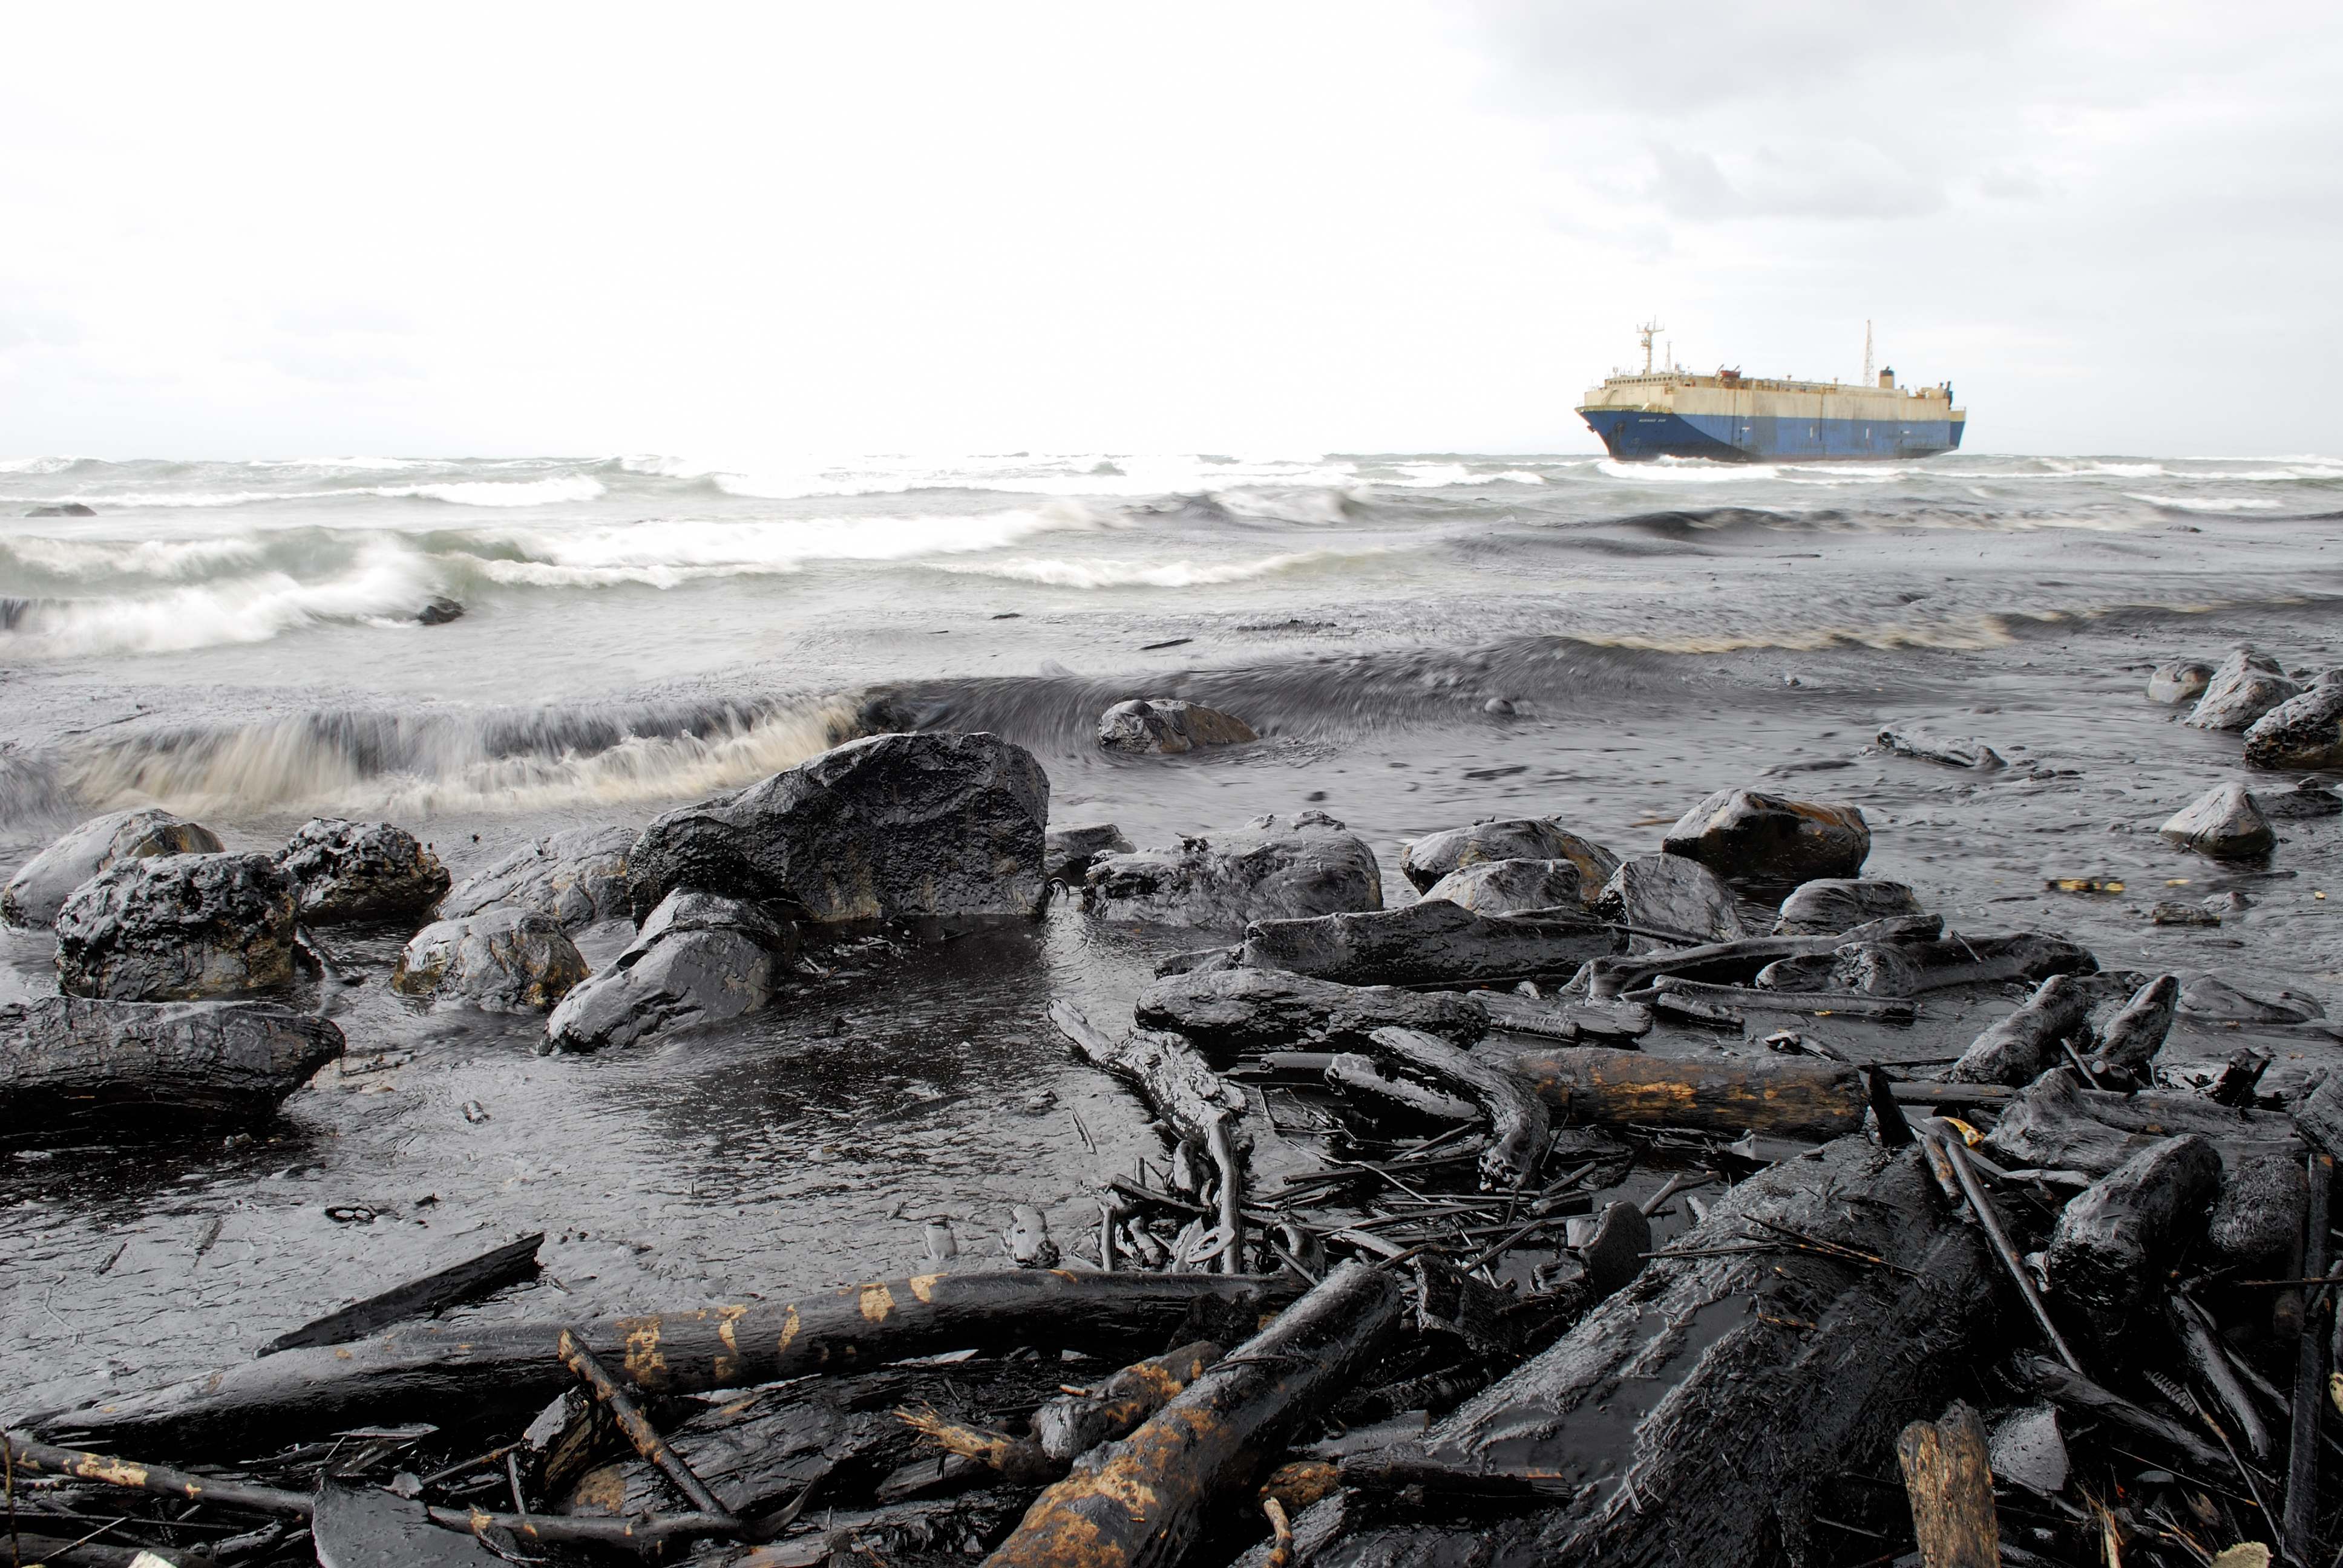 Нефть загрязняет воду. Экологическая катастрофа в море разлив нефти. Катастрофа в Норильске 2020 разлив нефтепродуктов. Разлив нефти в Баренцевом море. Черное море загрязнено нефтепродуктами.